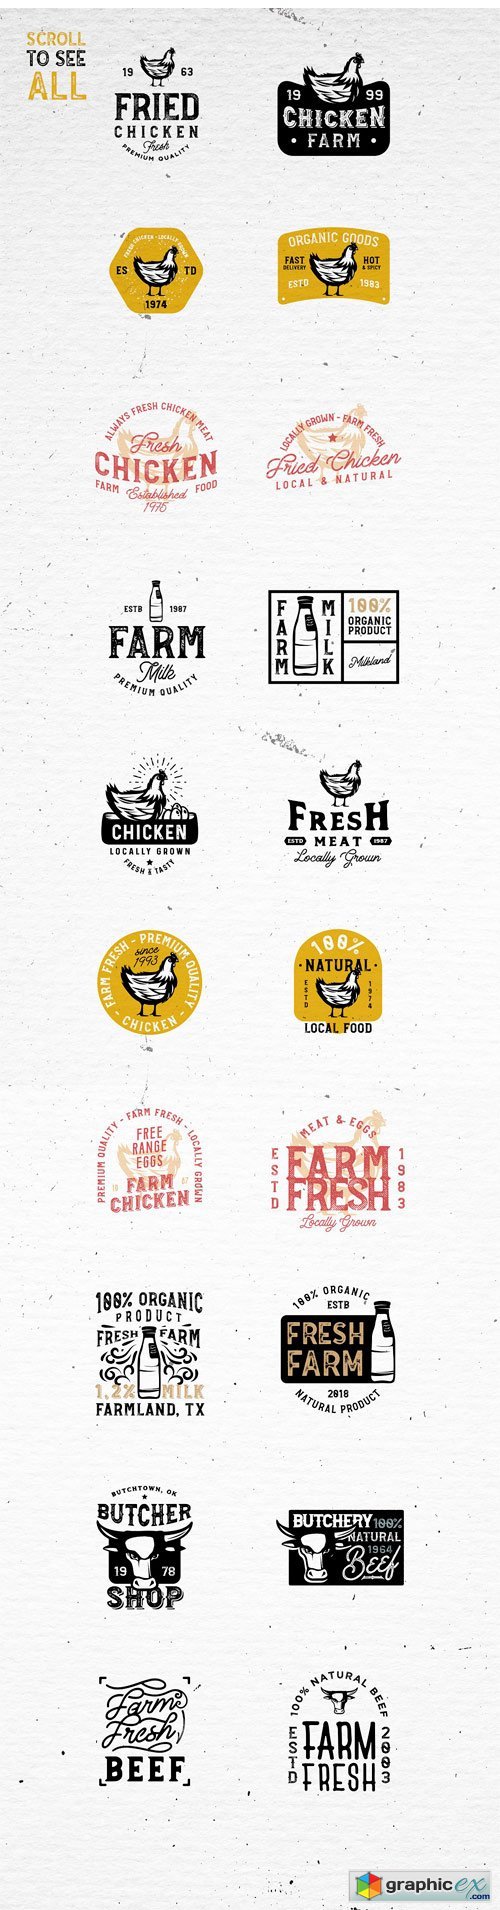 20 FARM FRESH Logos & Badges